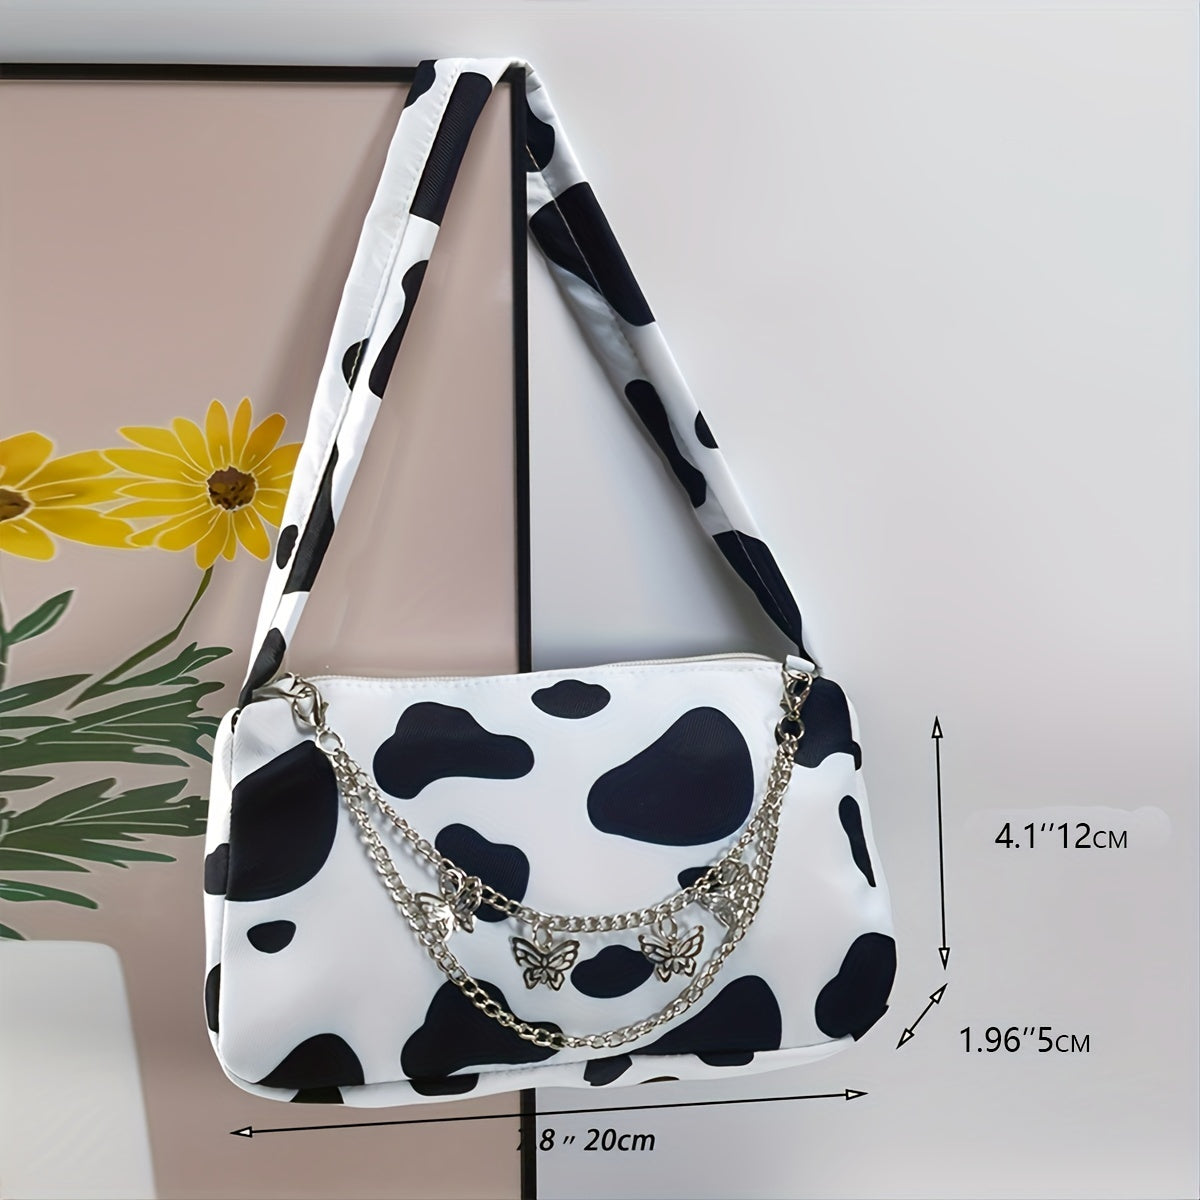 Cow Print Shoulder Bag, Women's Elegant Zipper Purse, Fashion Chain Decor Baguette Bag